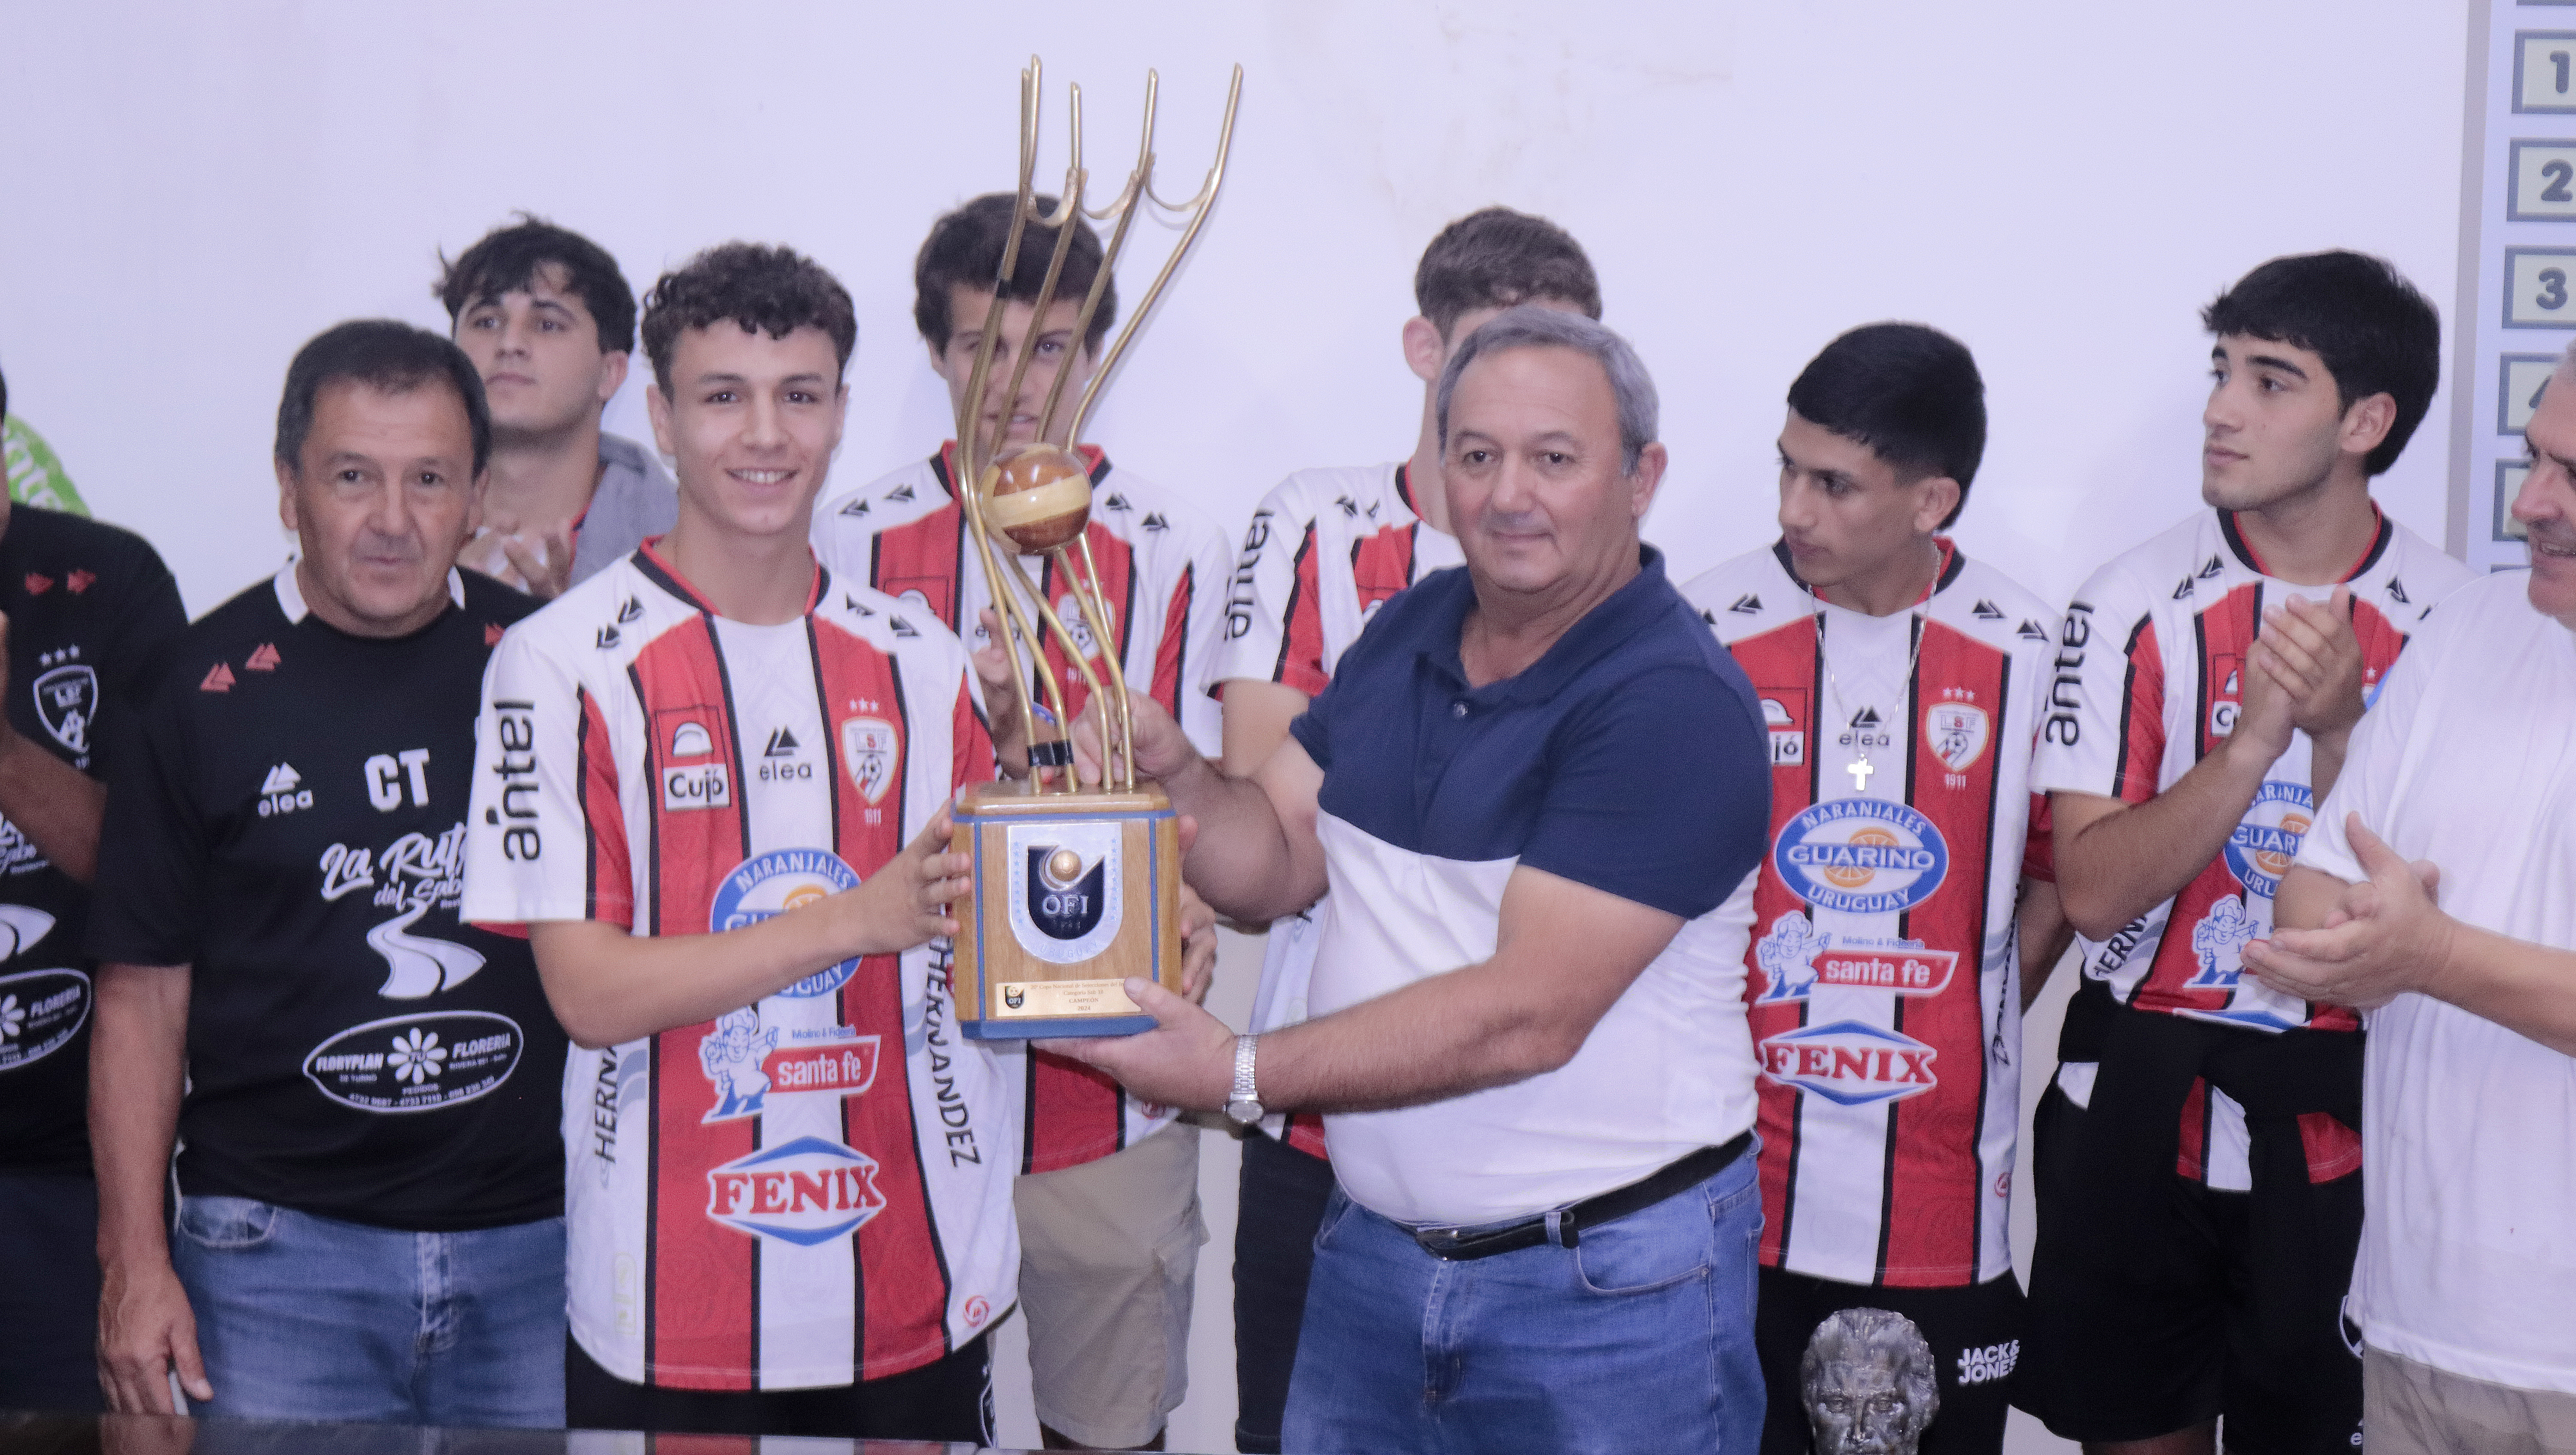 Selección juvenil fue recibida en la Liga y entregó la Copa de campeón